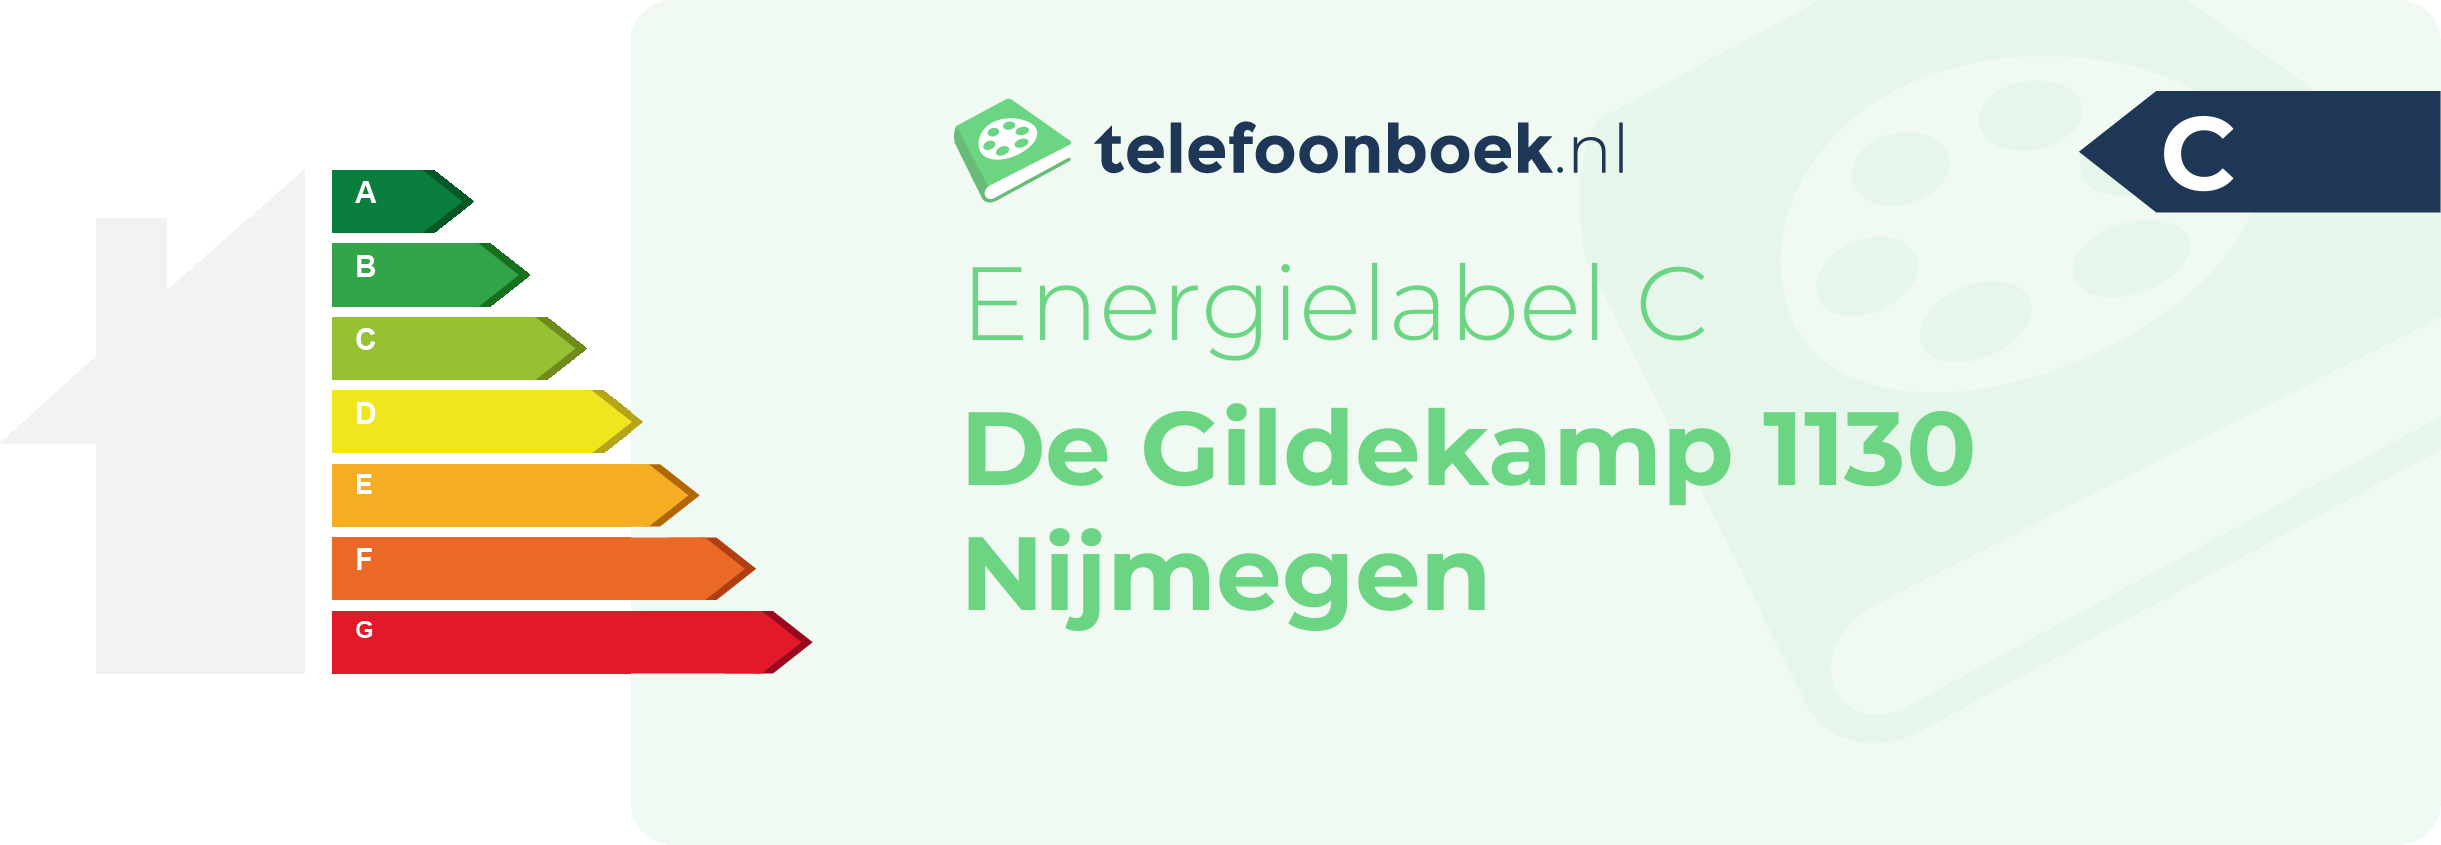 Energielabel De Gildekamp 1130 Nijmegen